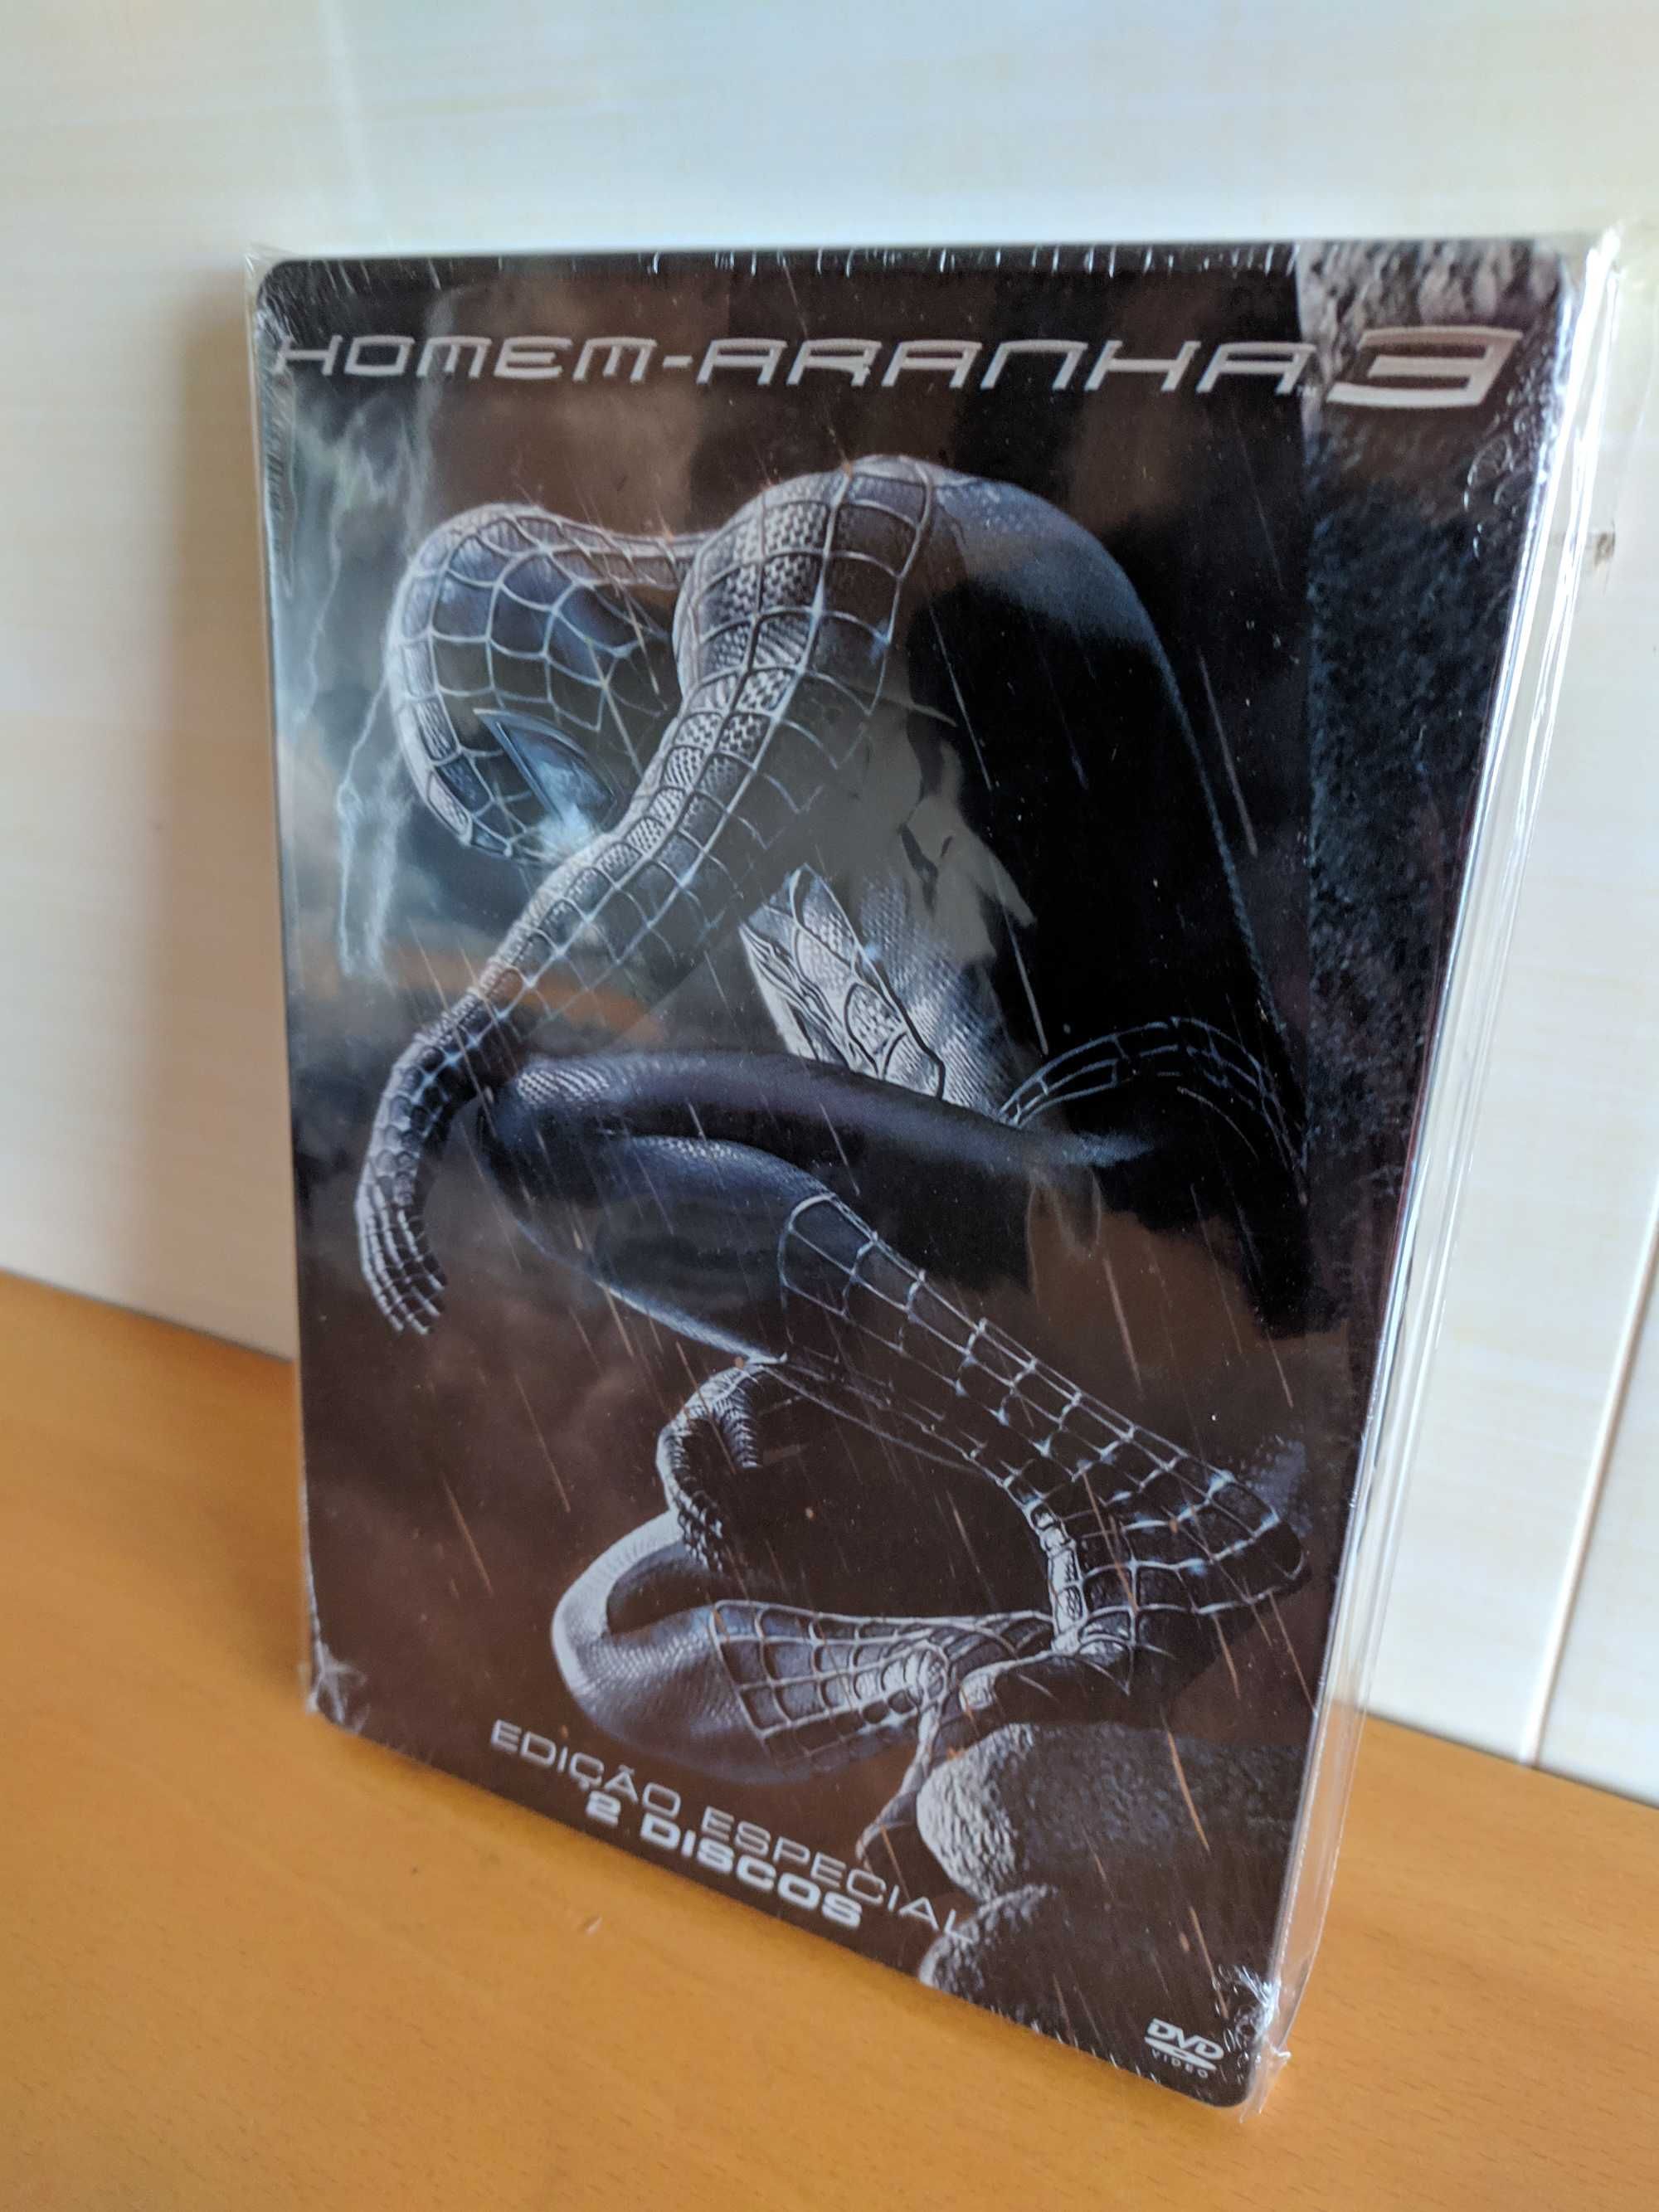 Coleção Spider-Man (Homem-Aranha) (DVD, Blu-ray, 4K)